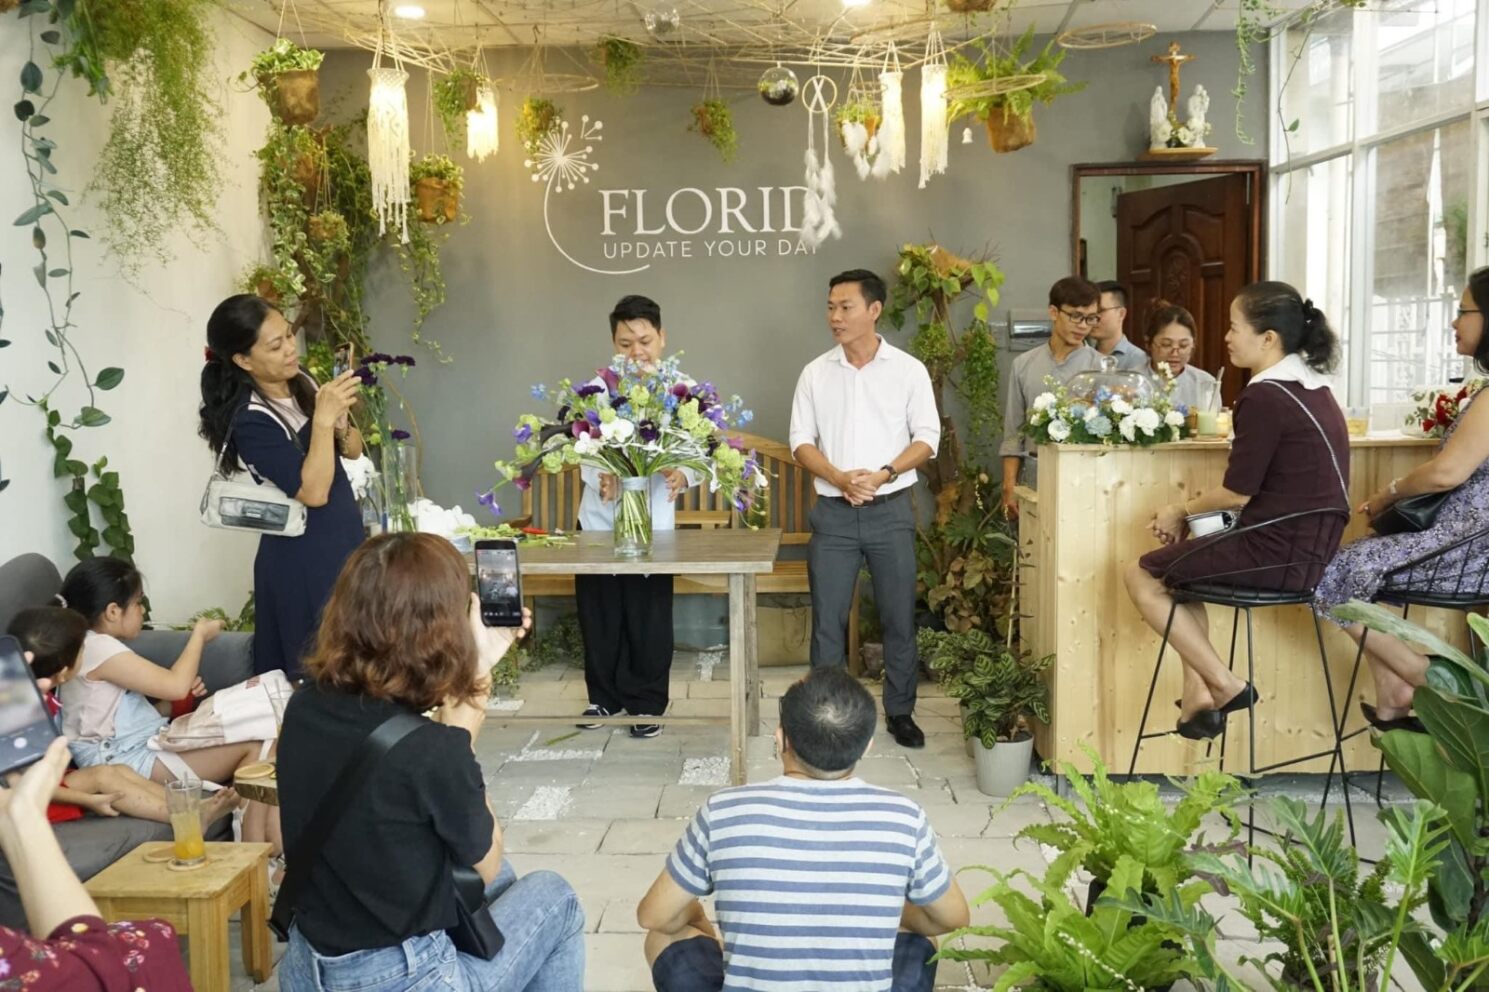 Tác giả (đứng, áo màu sáng) gửi lời tri ân bạn bè đến dự khai trương cà phê hoa Florid​ - ảnh nhân vật cung cấp